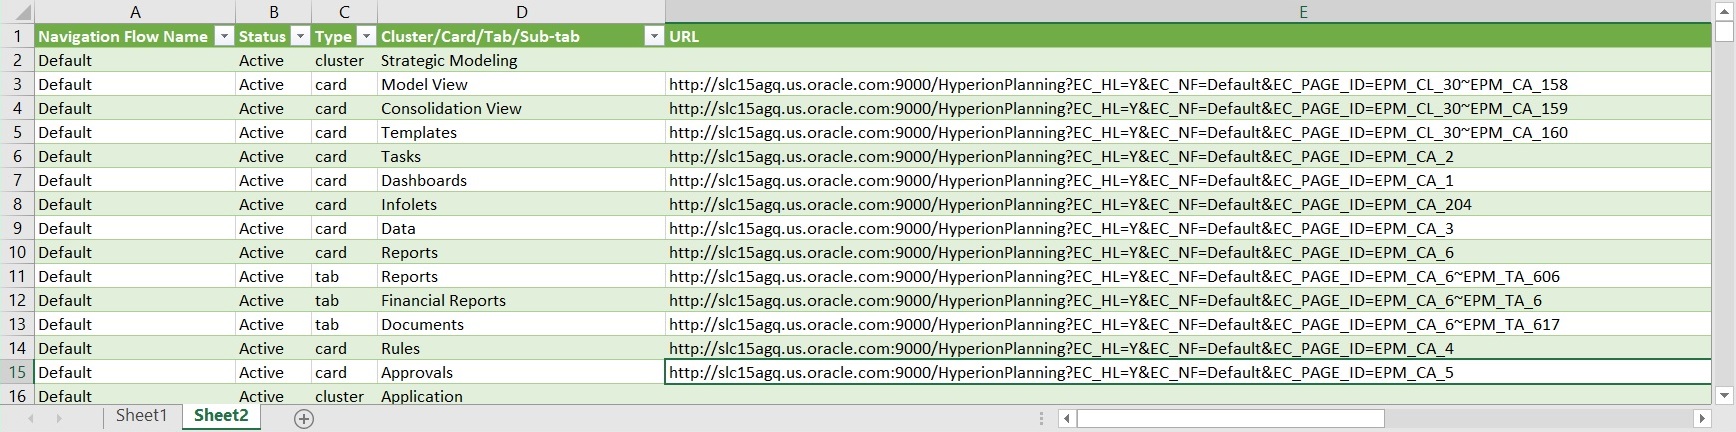 Beispielexportdatei für direkte URLs bei Anzeige in Excel